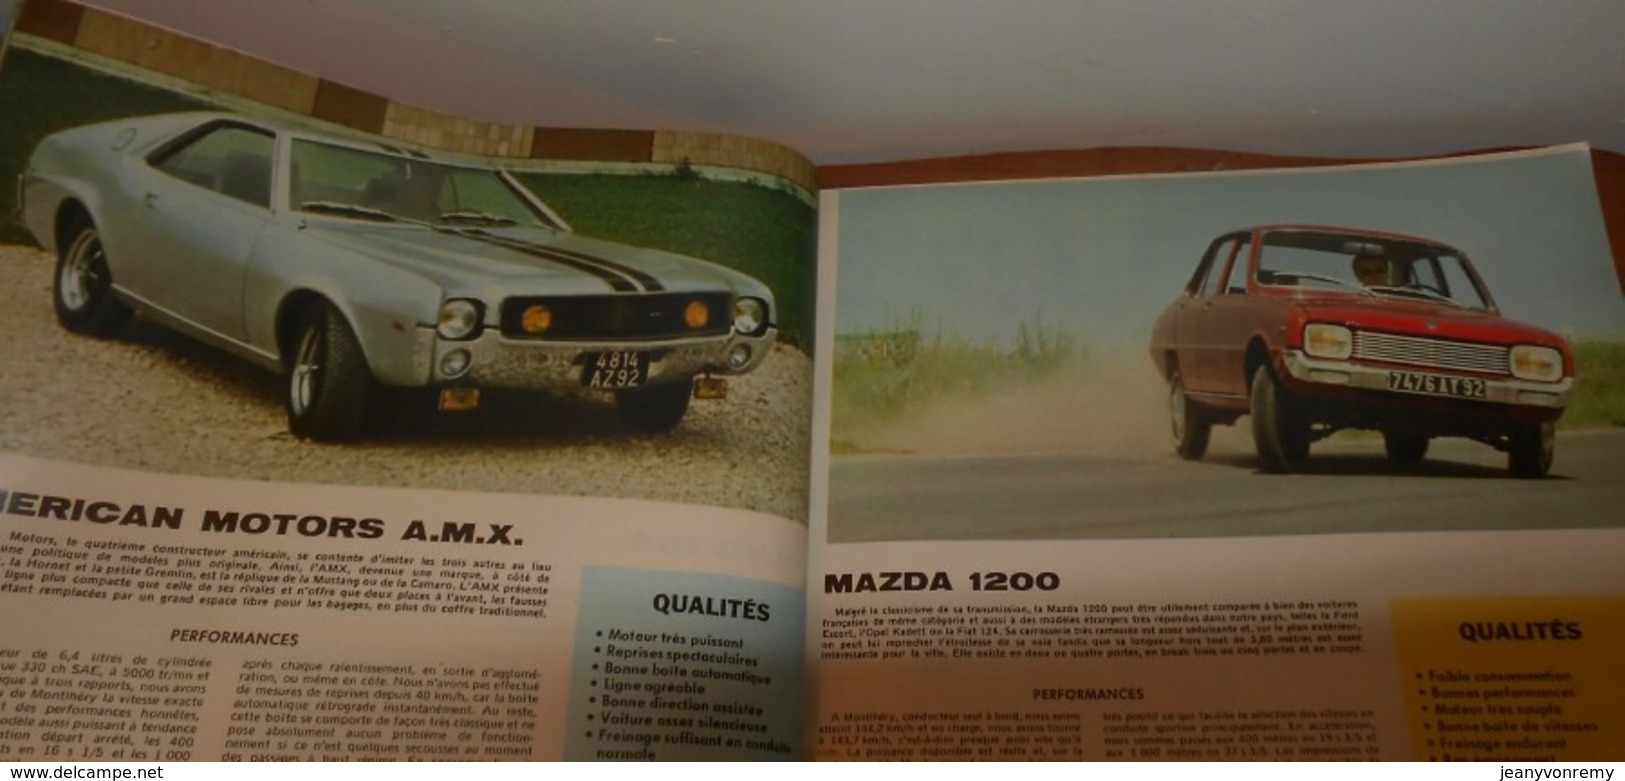 Le Salon de l'Auto. L'auto journal. Catalogue complet de la production mondiale. 1970.